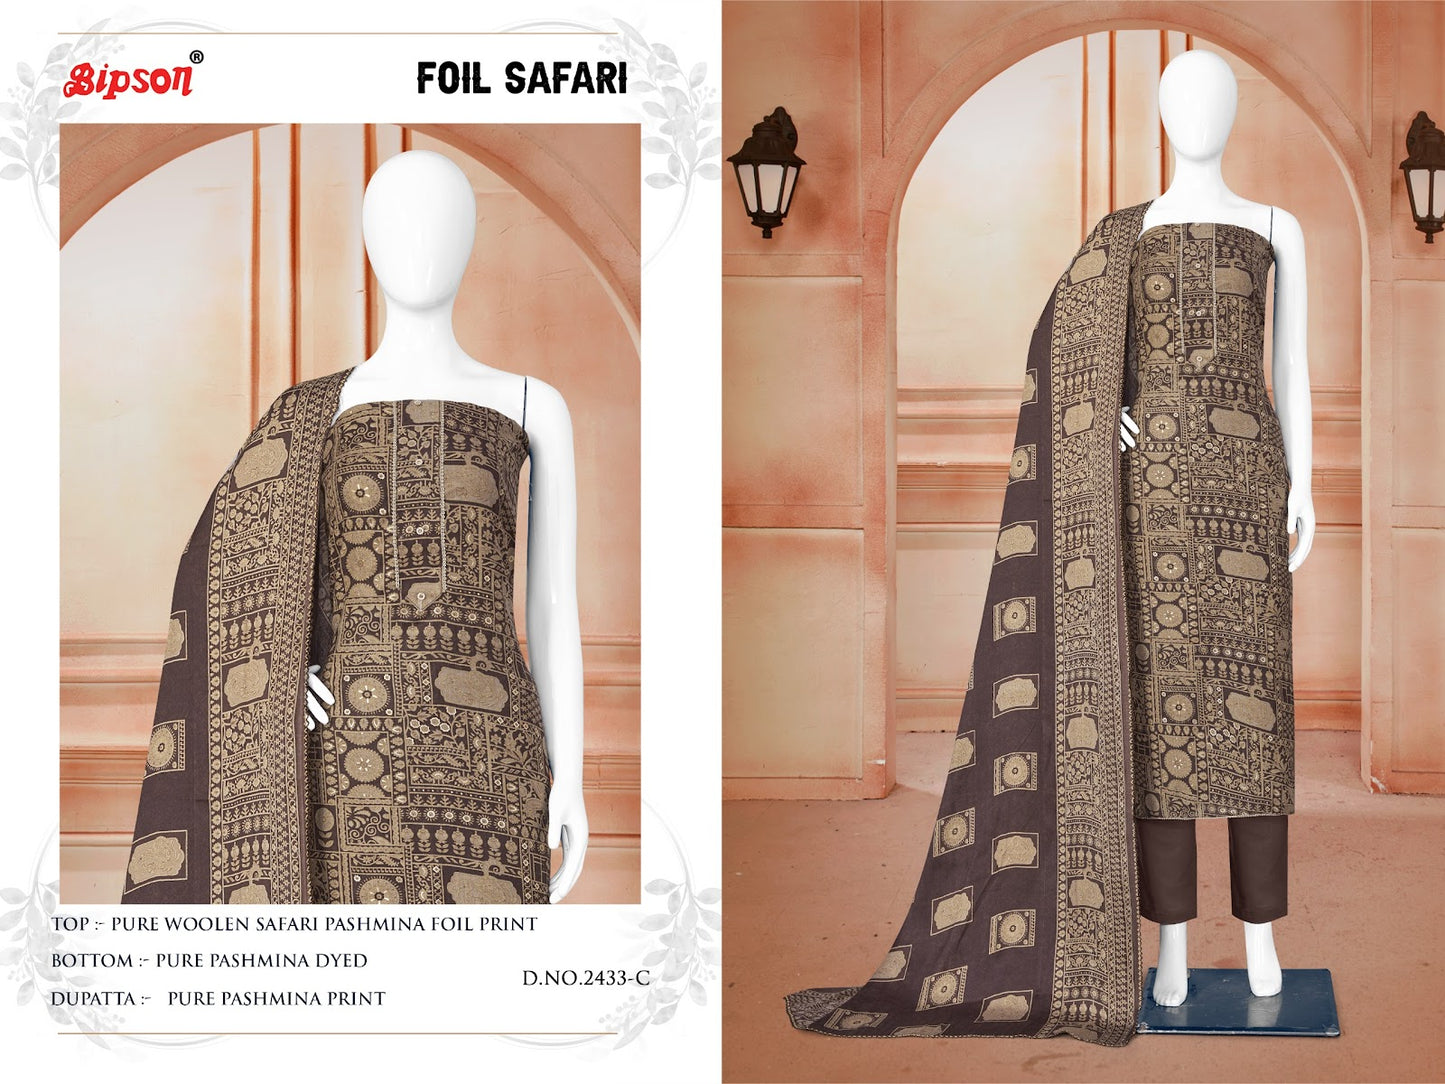 Foil Safari-2433 Bipson Prints Woolen Pashmina Suits